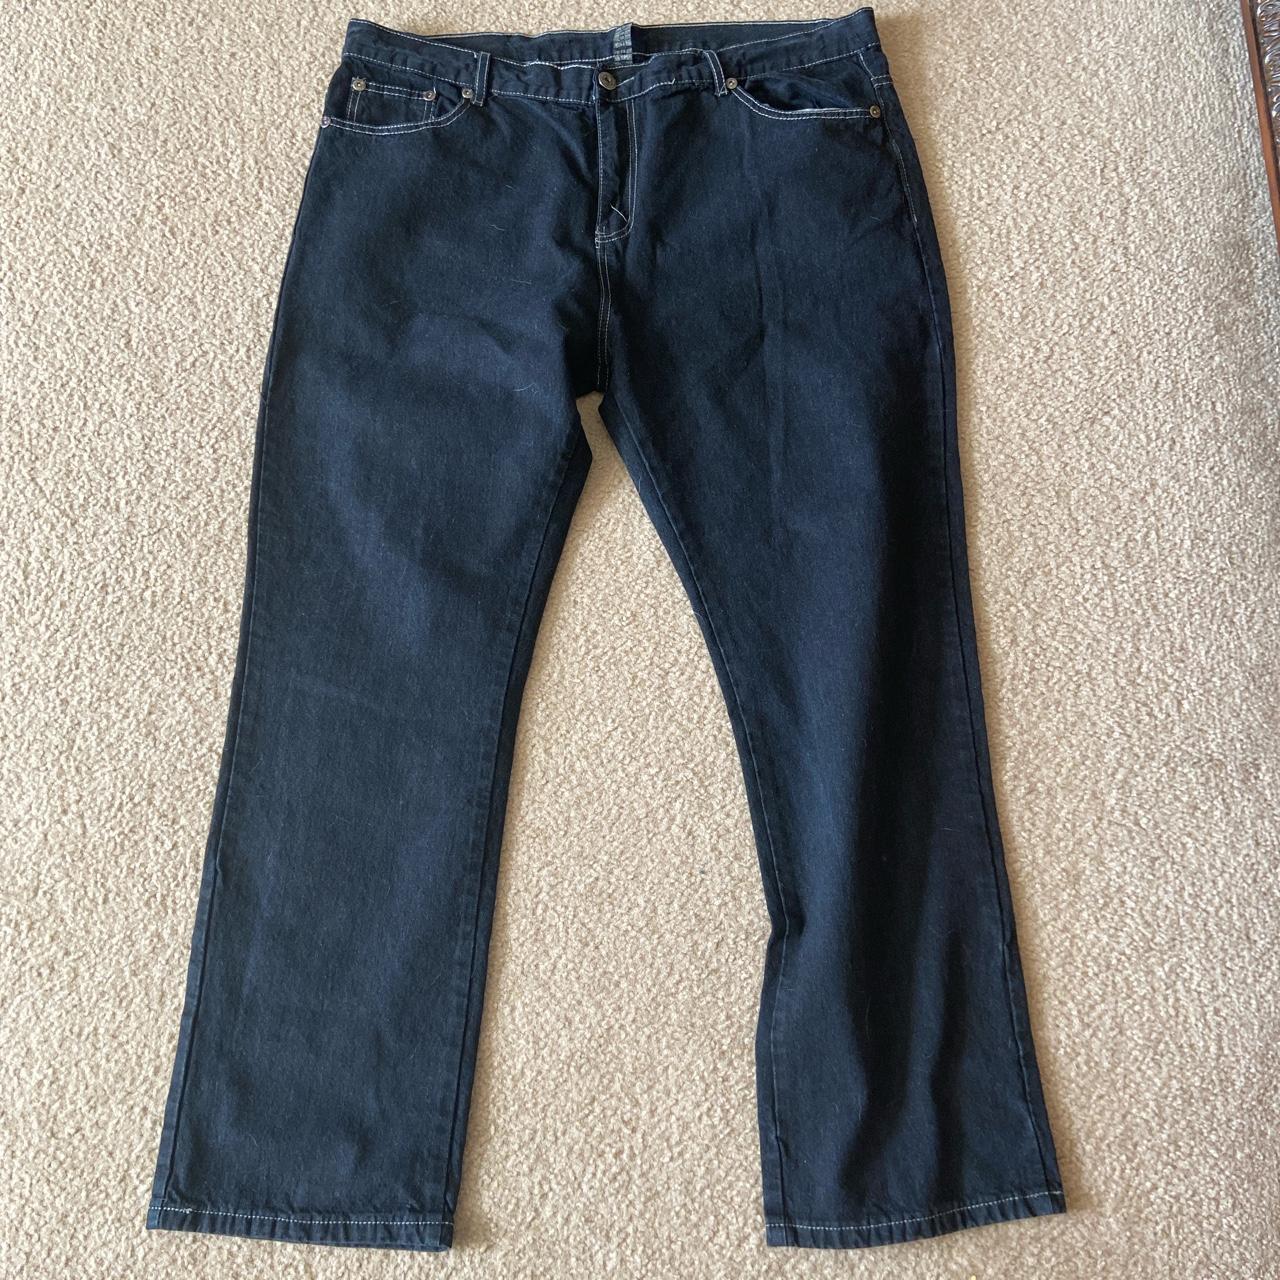 True rock blue denim jeans straight jeans 👖 size... - Depop